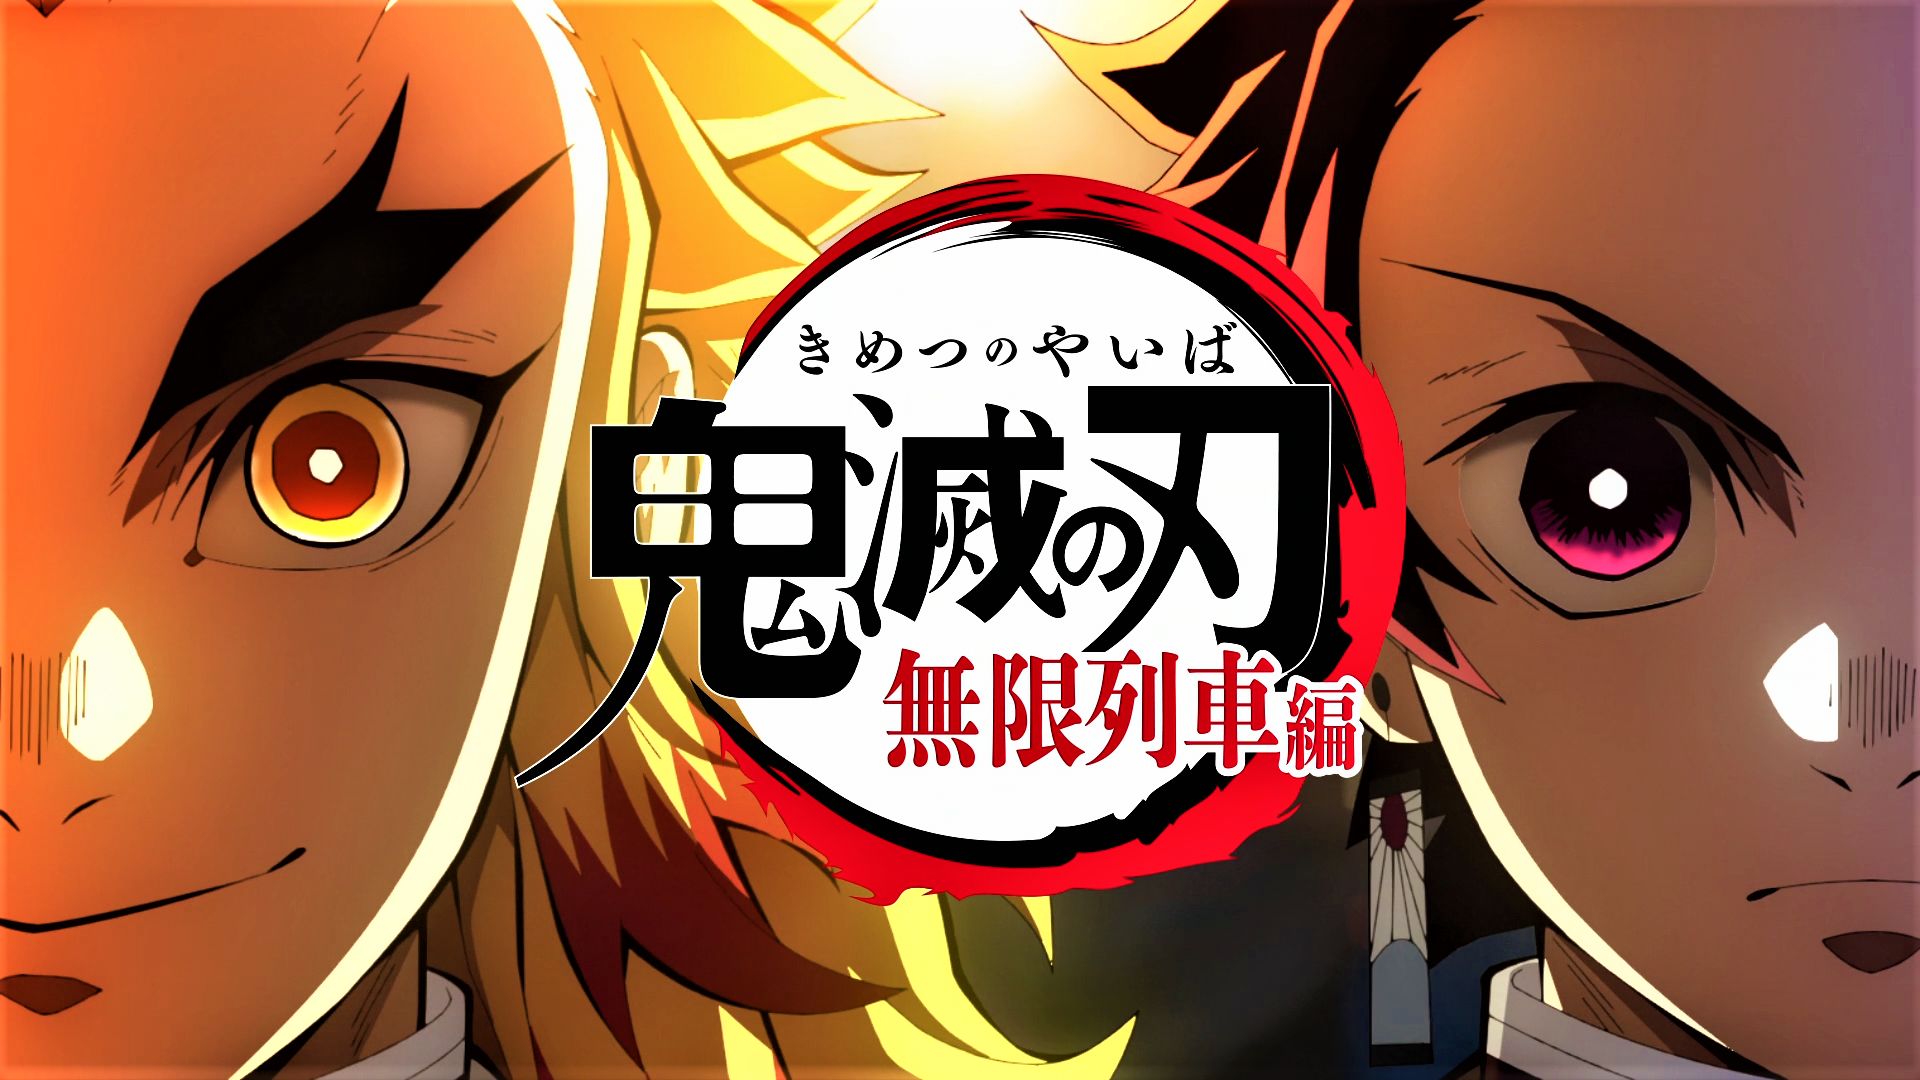 Free download wallpaper Anime, Demon Slayer: Kimetsu No Yaiba, Kyojuro Rengoku, Tanjiro Kamado on your PC desktop